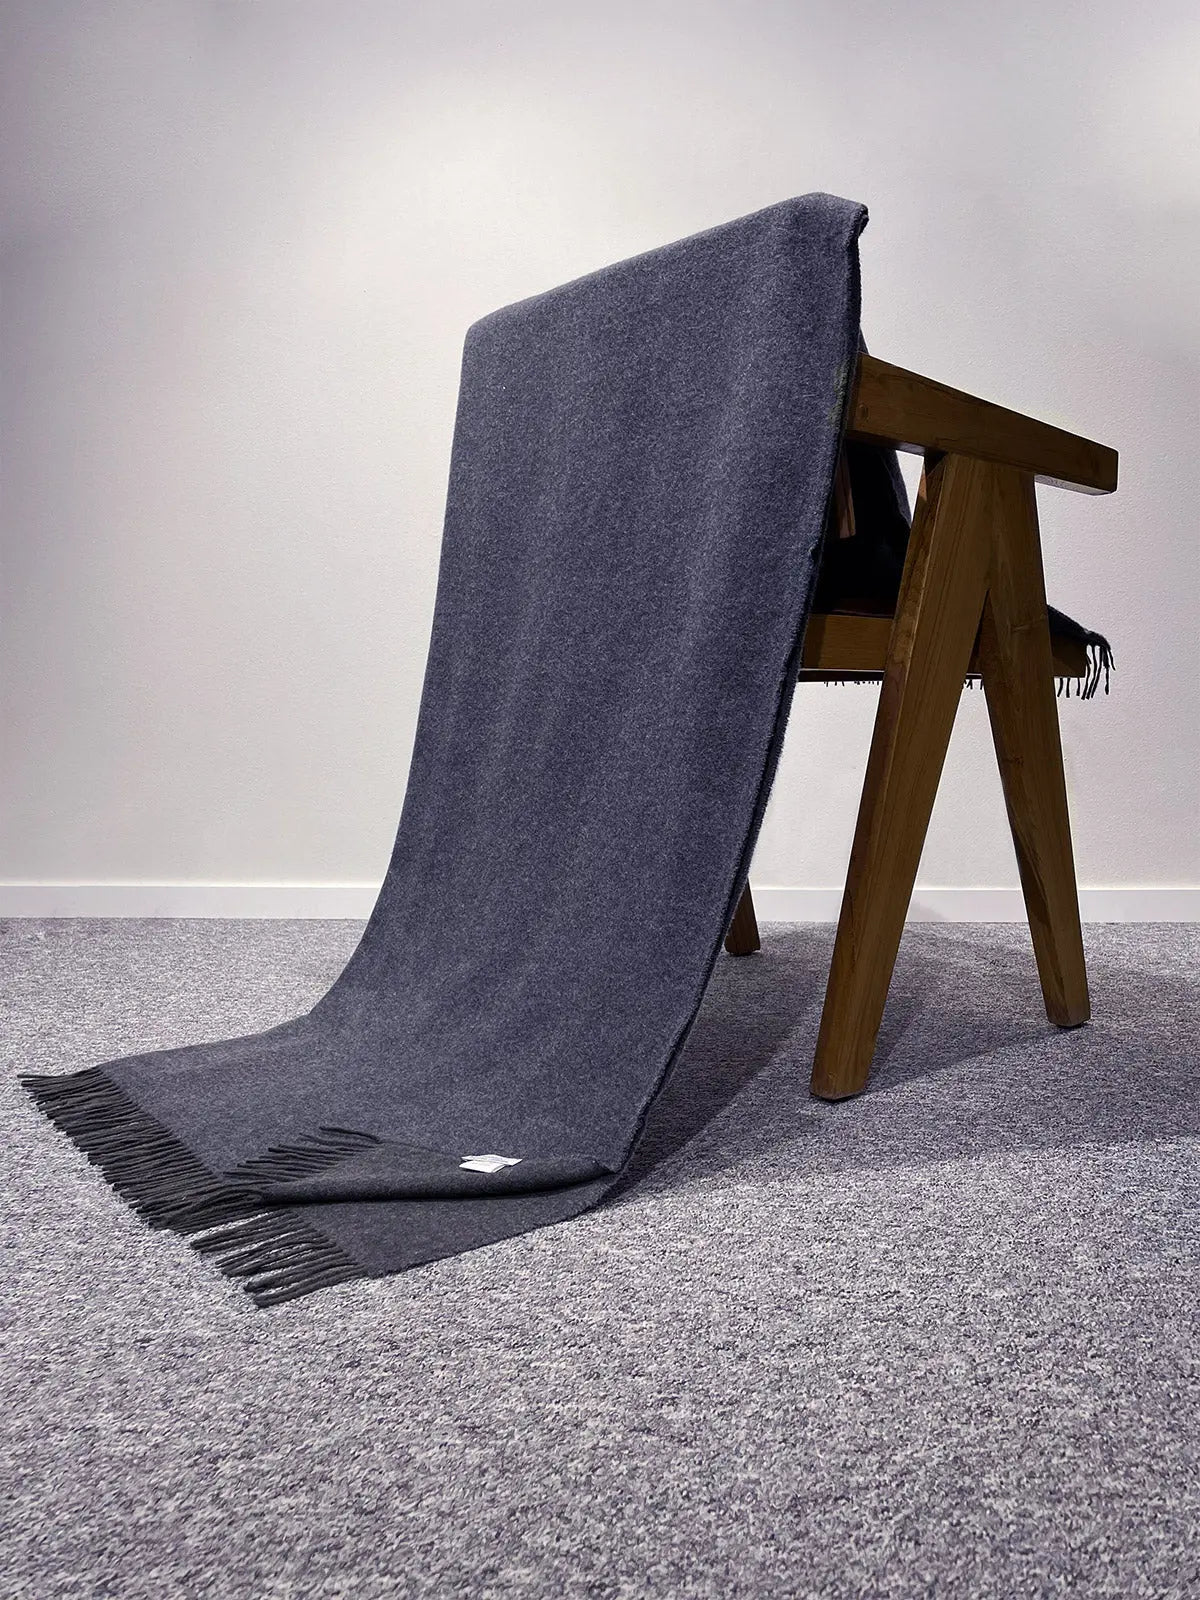 Cashmere blanket in dark gray shade